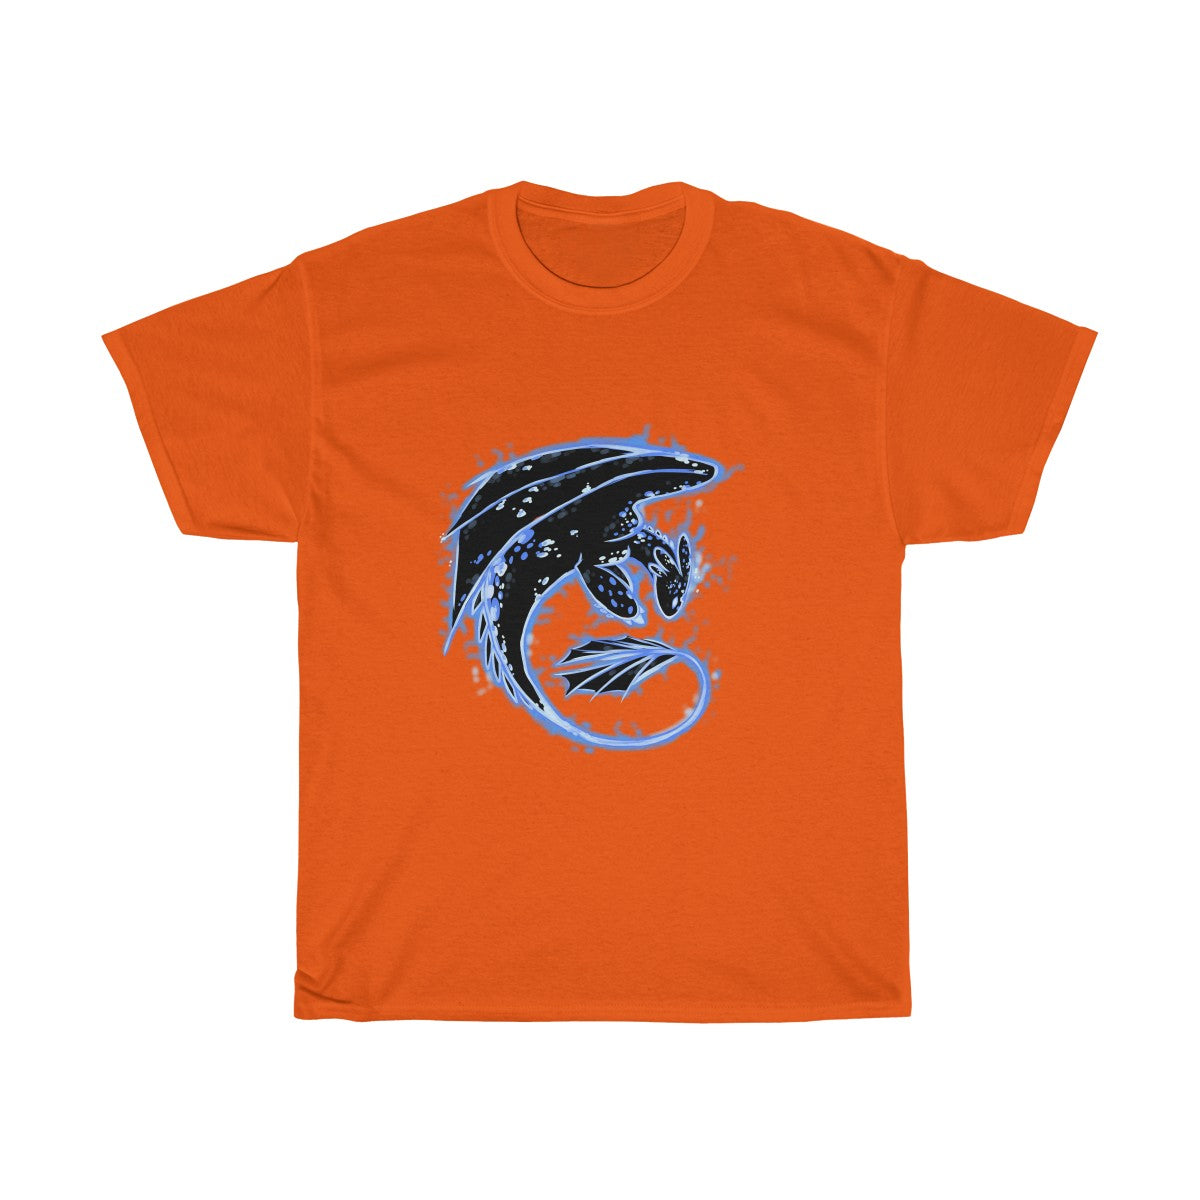 Blue Dragon - T-Shirt T-Shirt Dire Creatures Orange S 